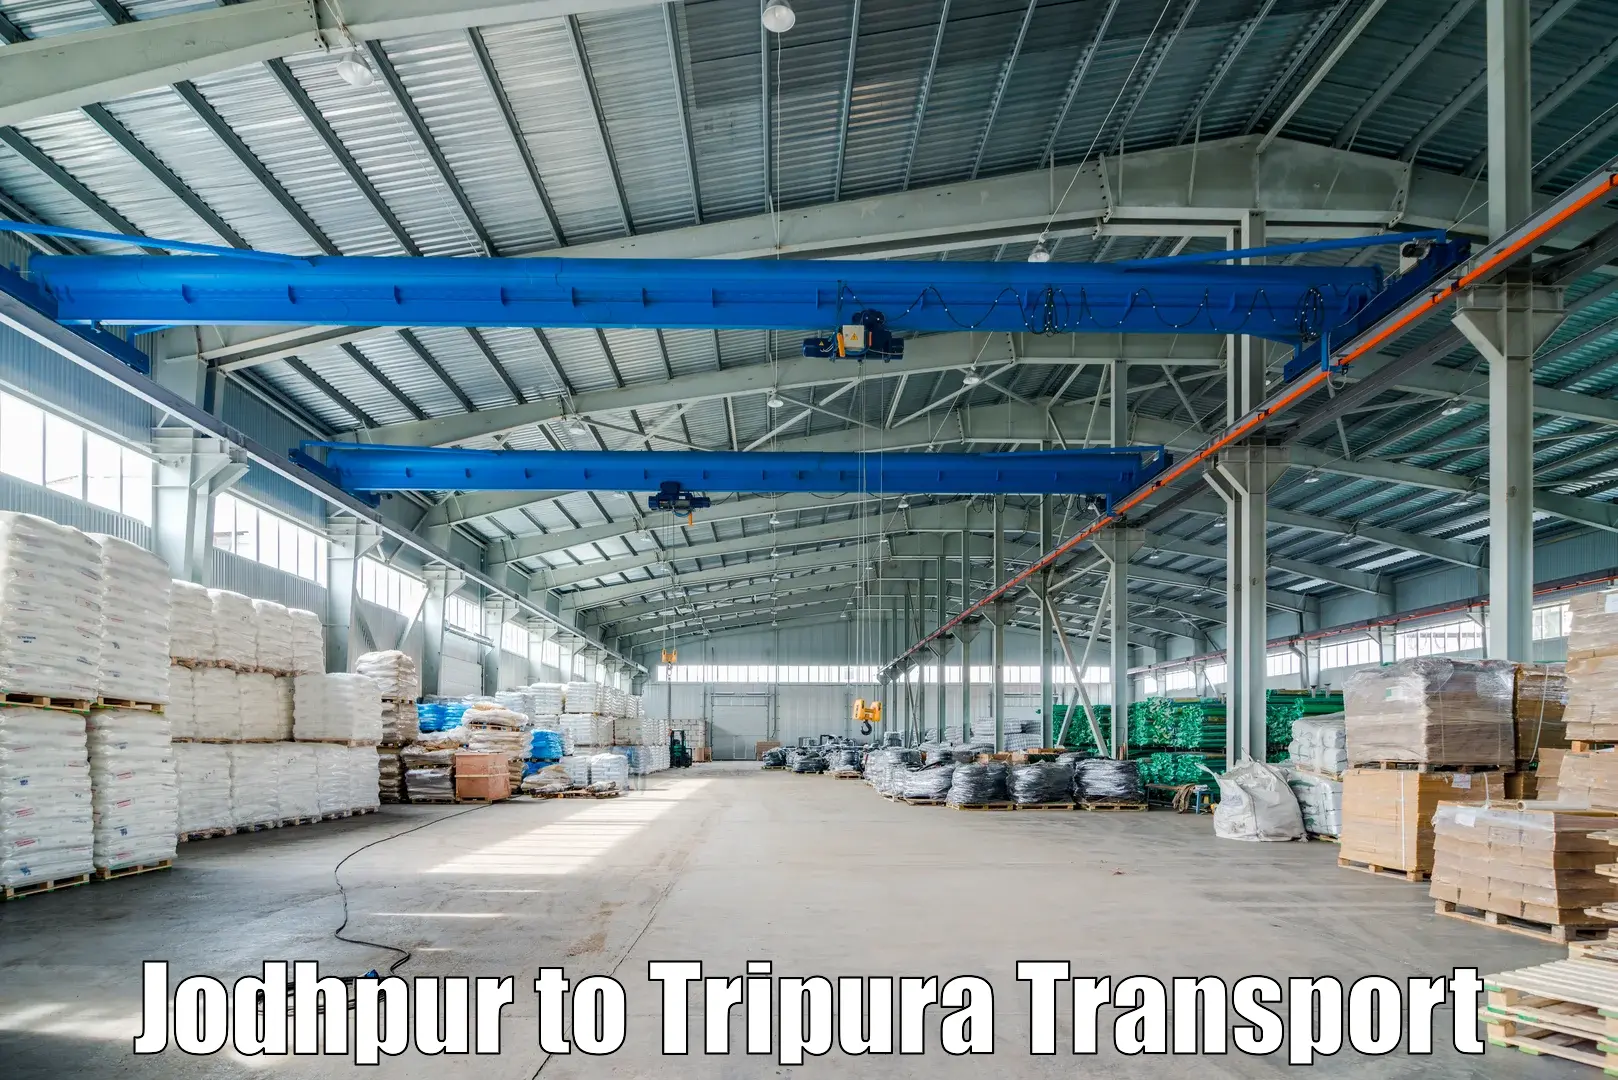 Door to door transport services Jodhpur to Udaipur Tripura